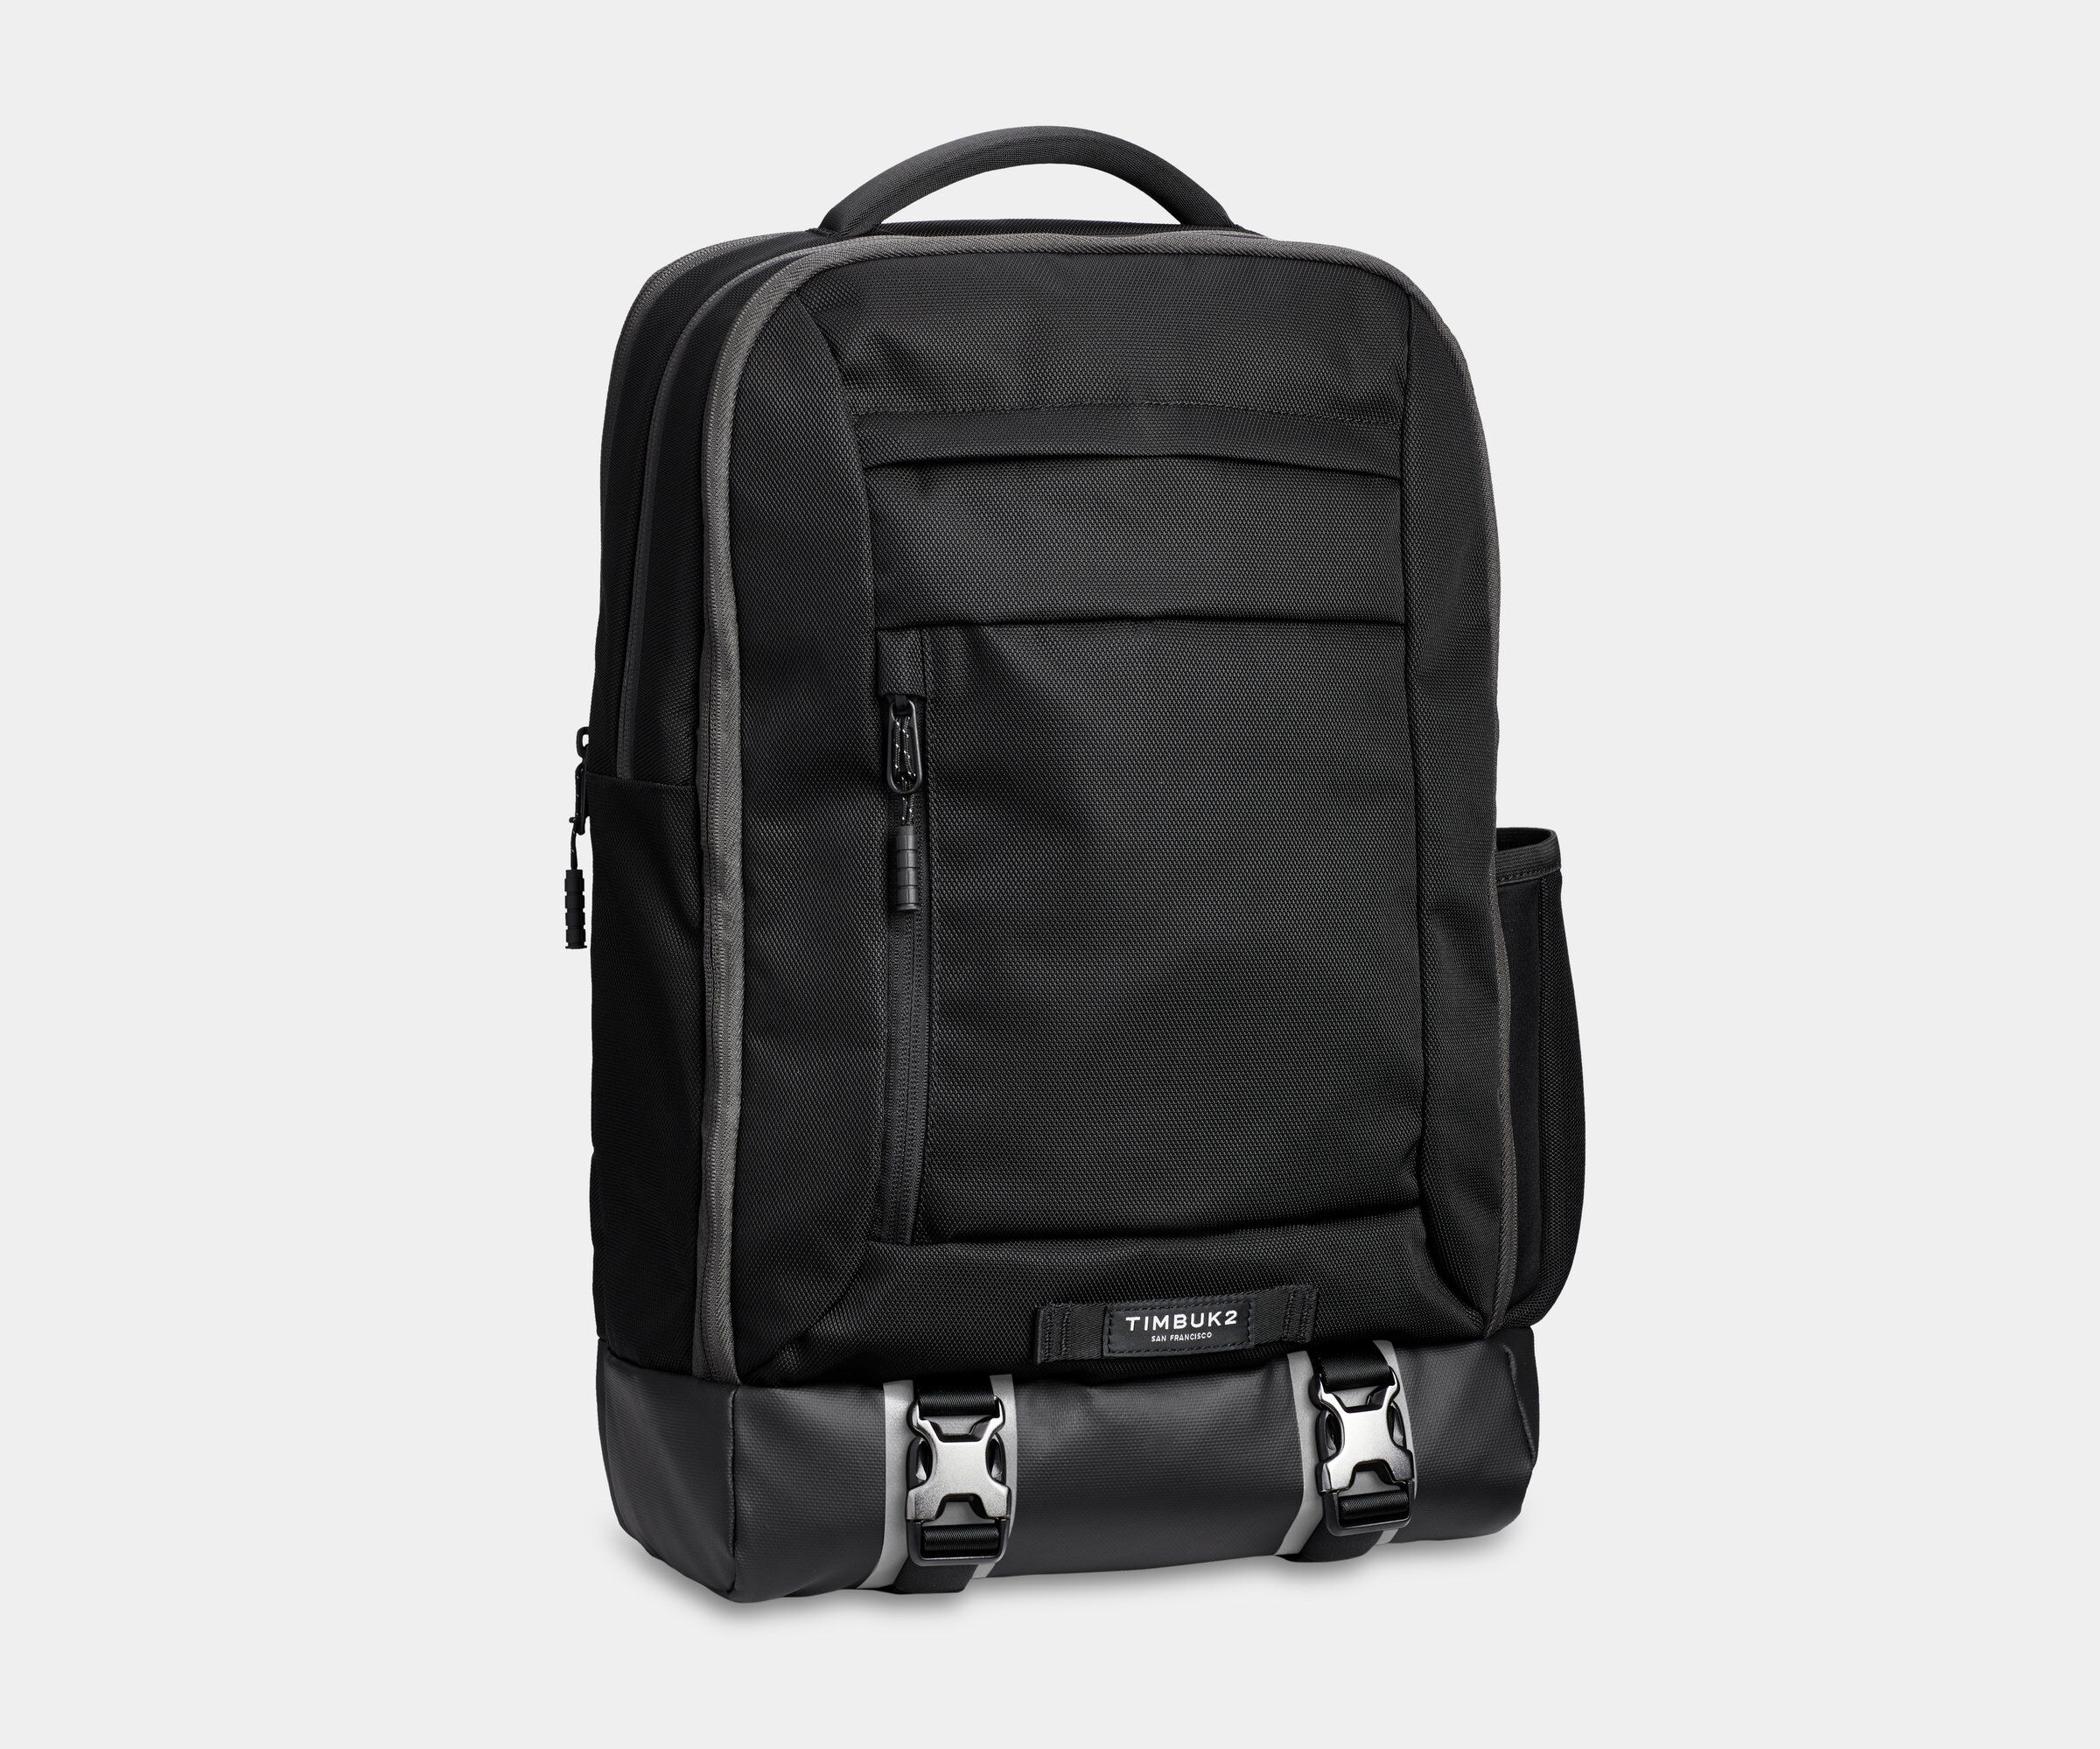 Custom Branded Timbuk2 Bags - Black Deluxe